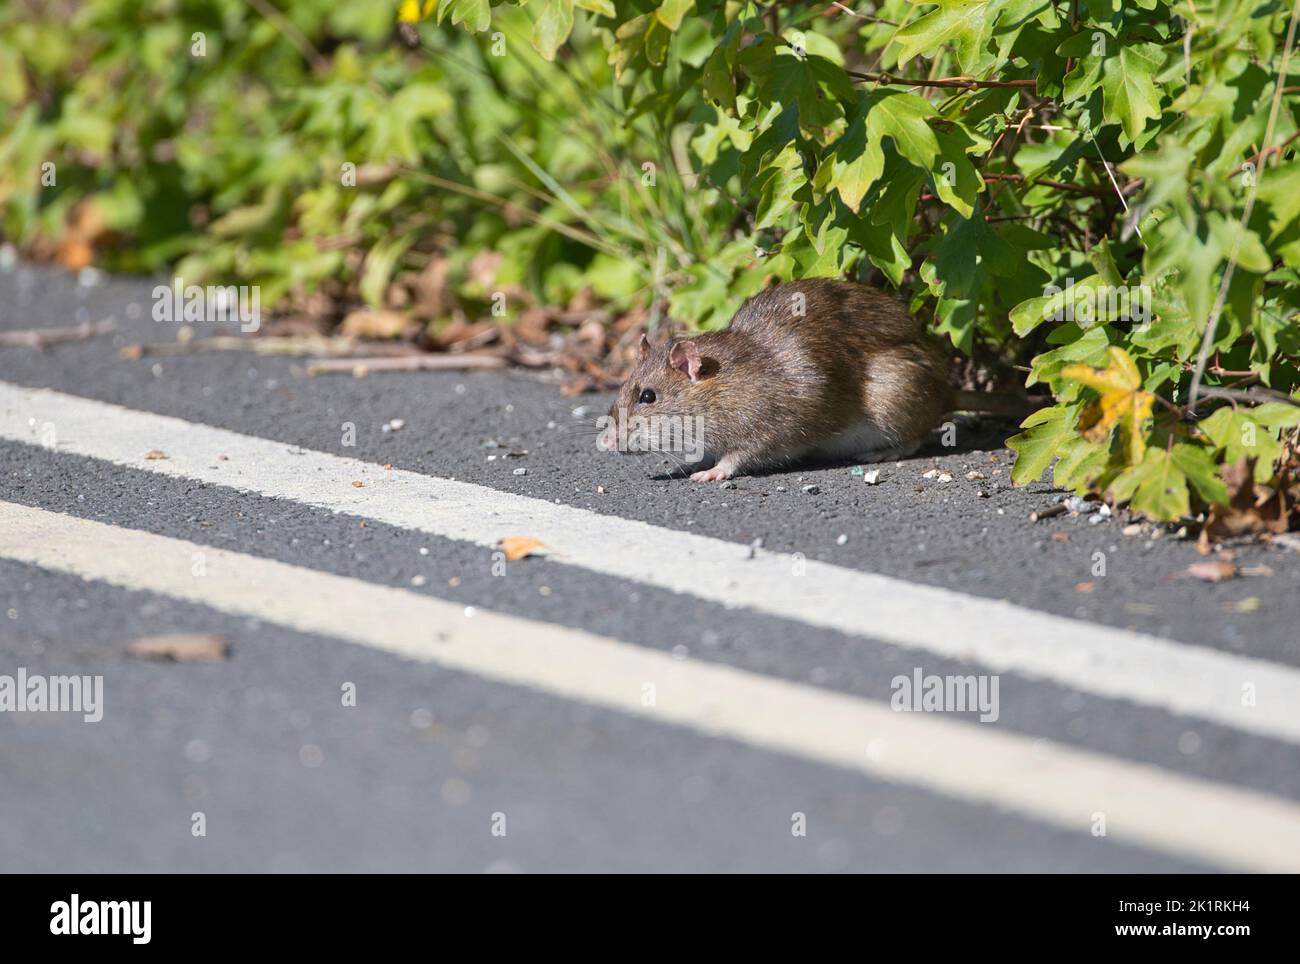 Rata marrón (Rattus norvegicus) a punto de cruzar una carretera en un área construida. Foto de stock